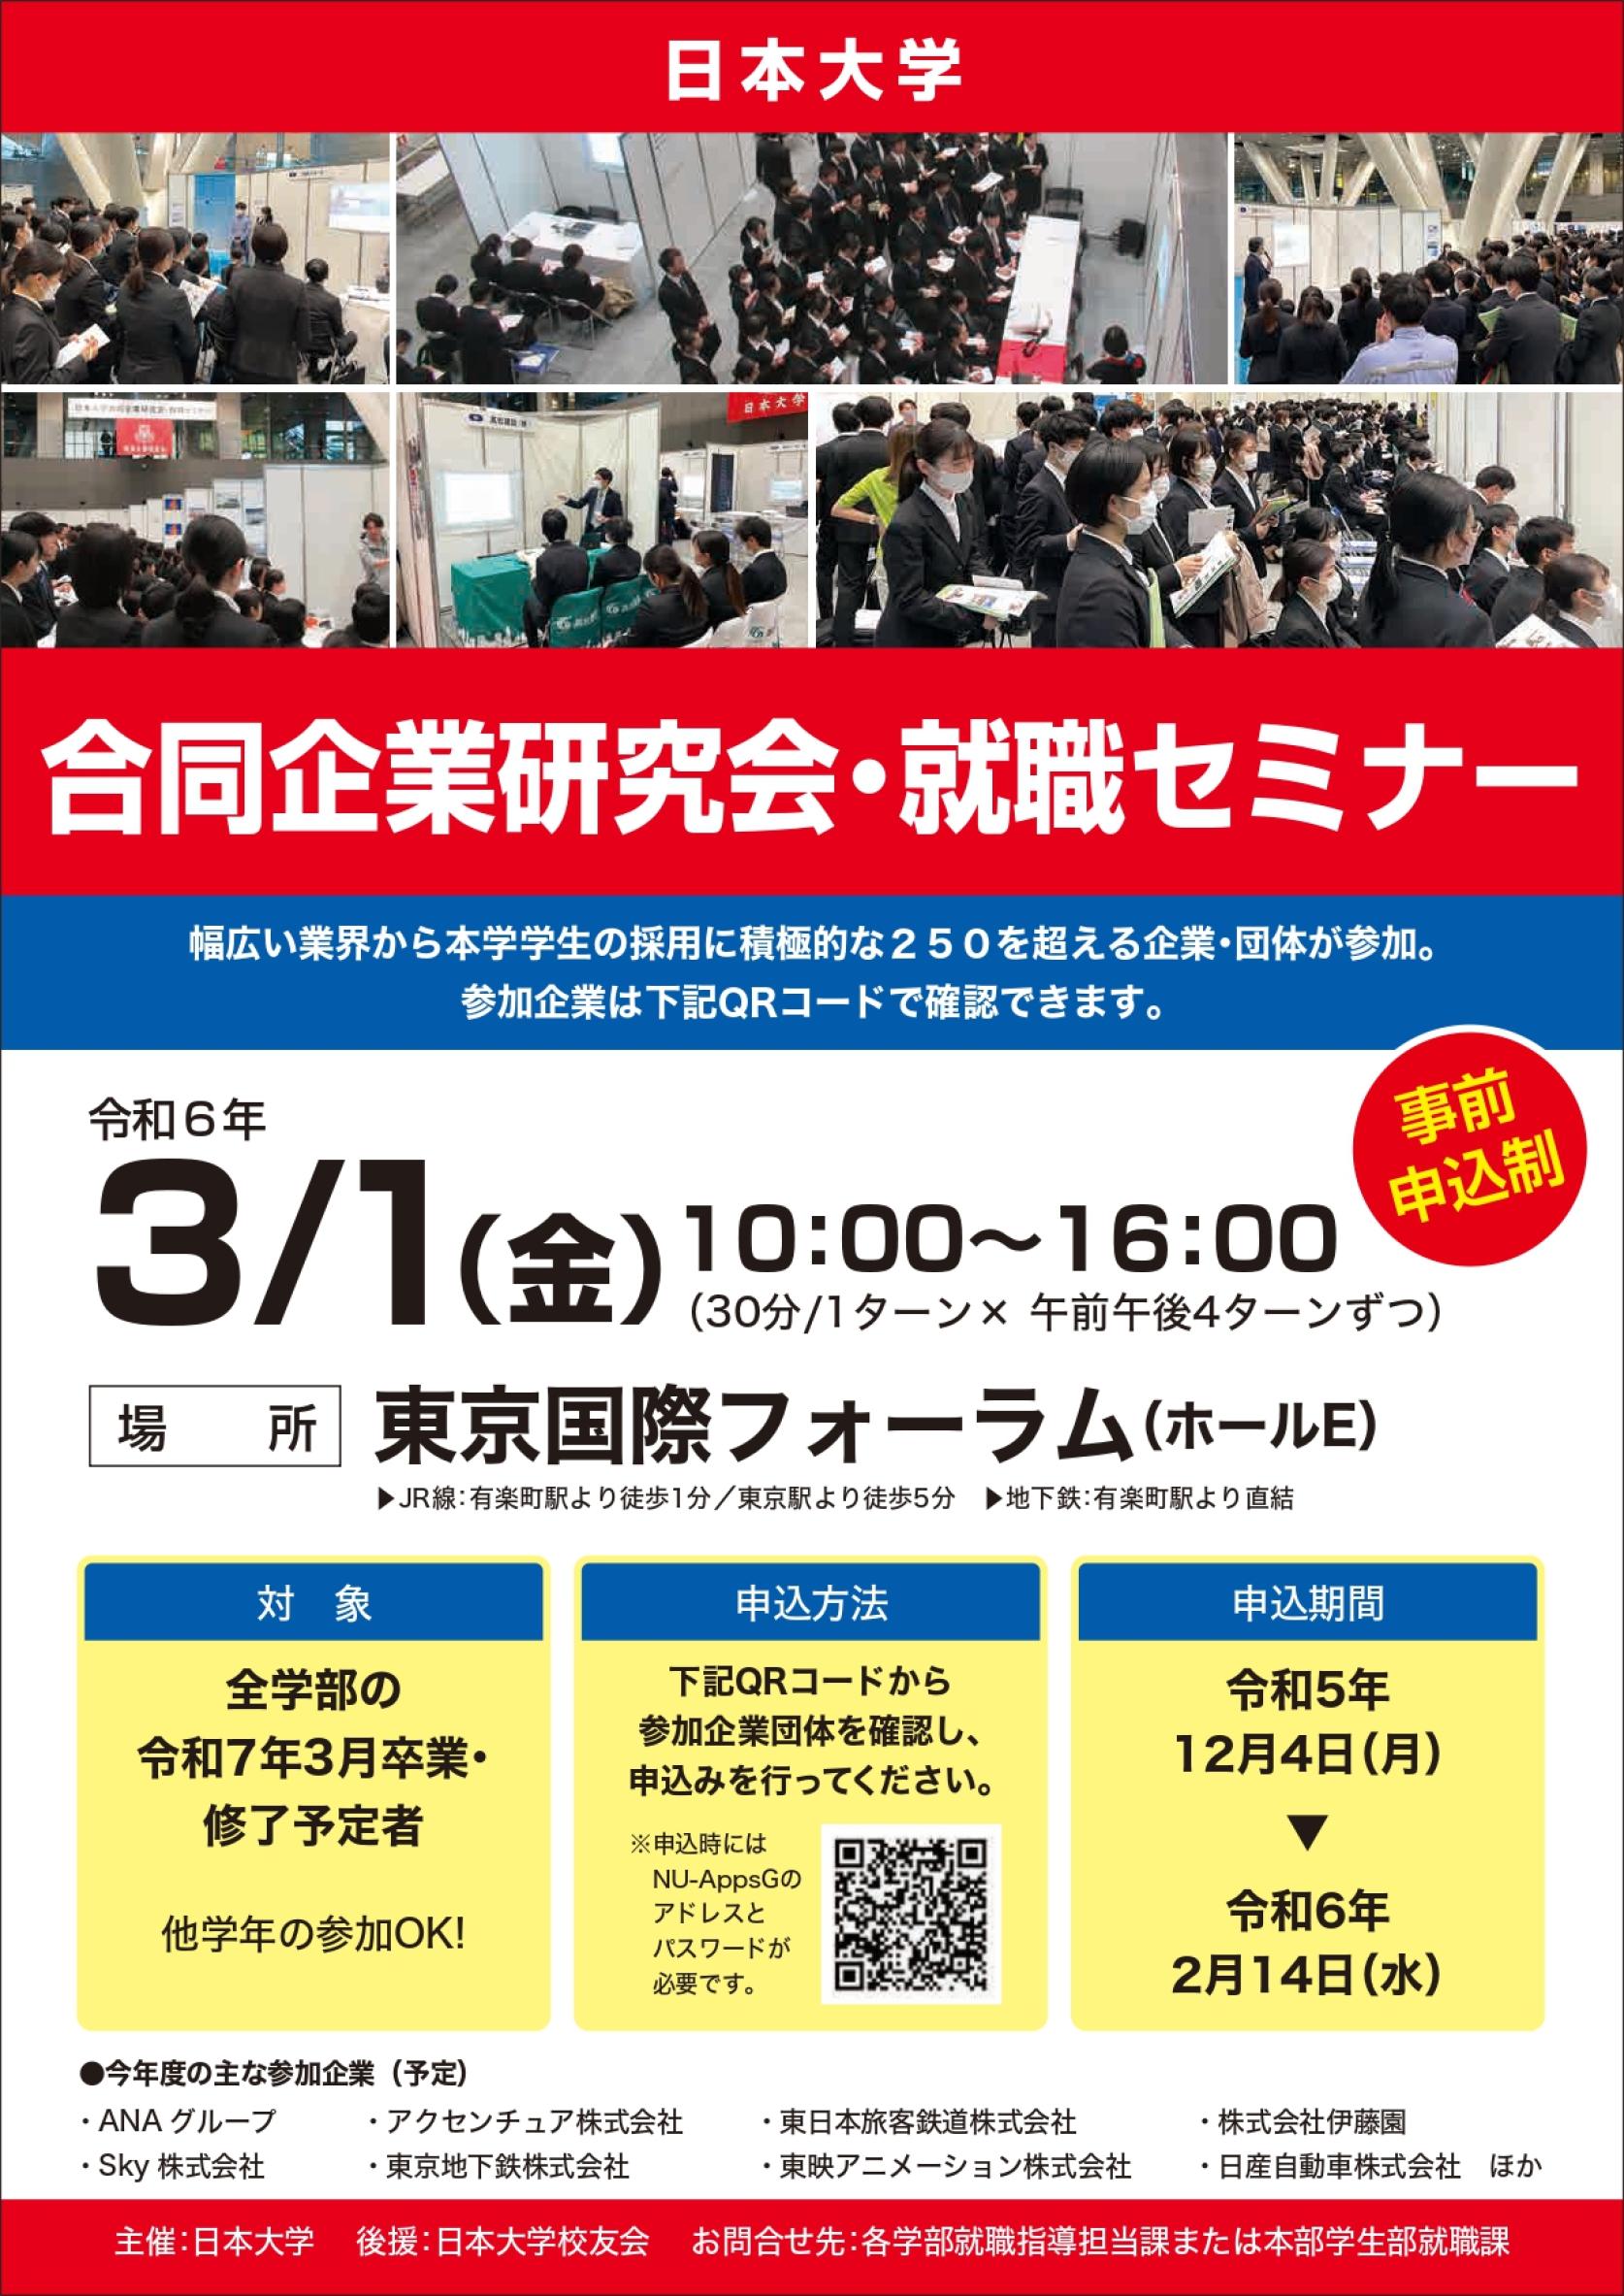 【就職指導課】３月１日(金) 東京国際フォーラム： 日本大学「合同企業研究会・就職セミナー」を開催します。